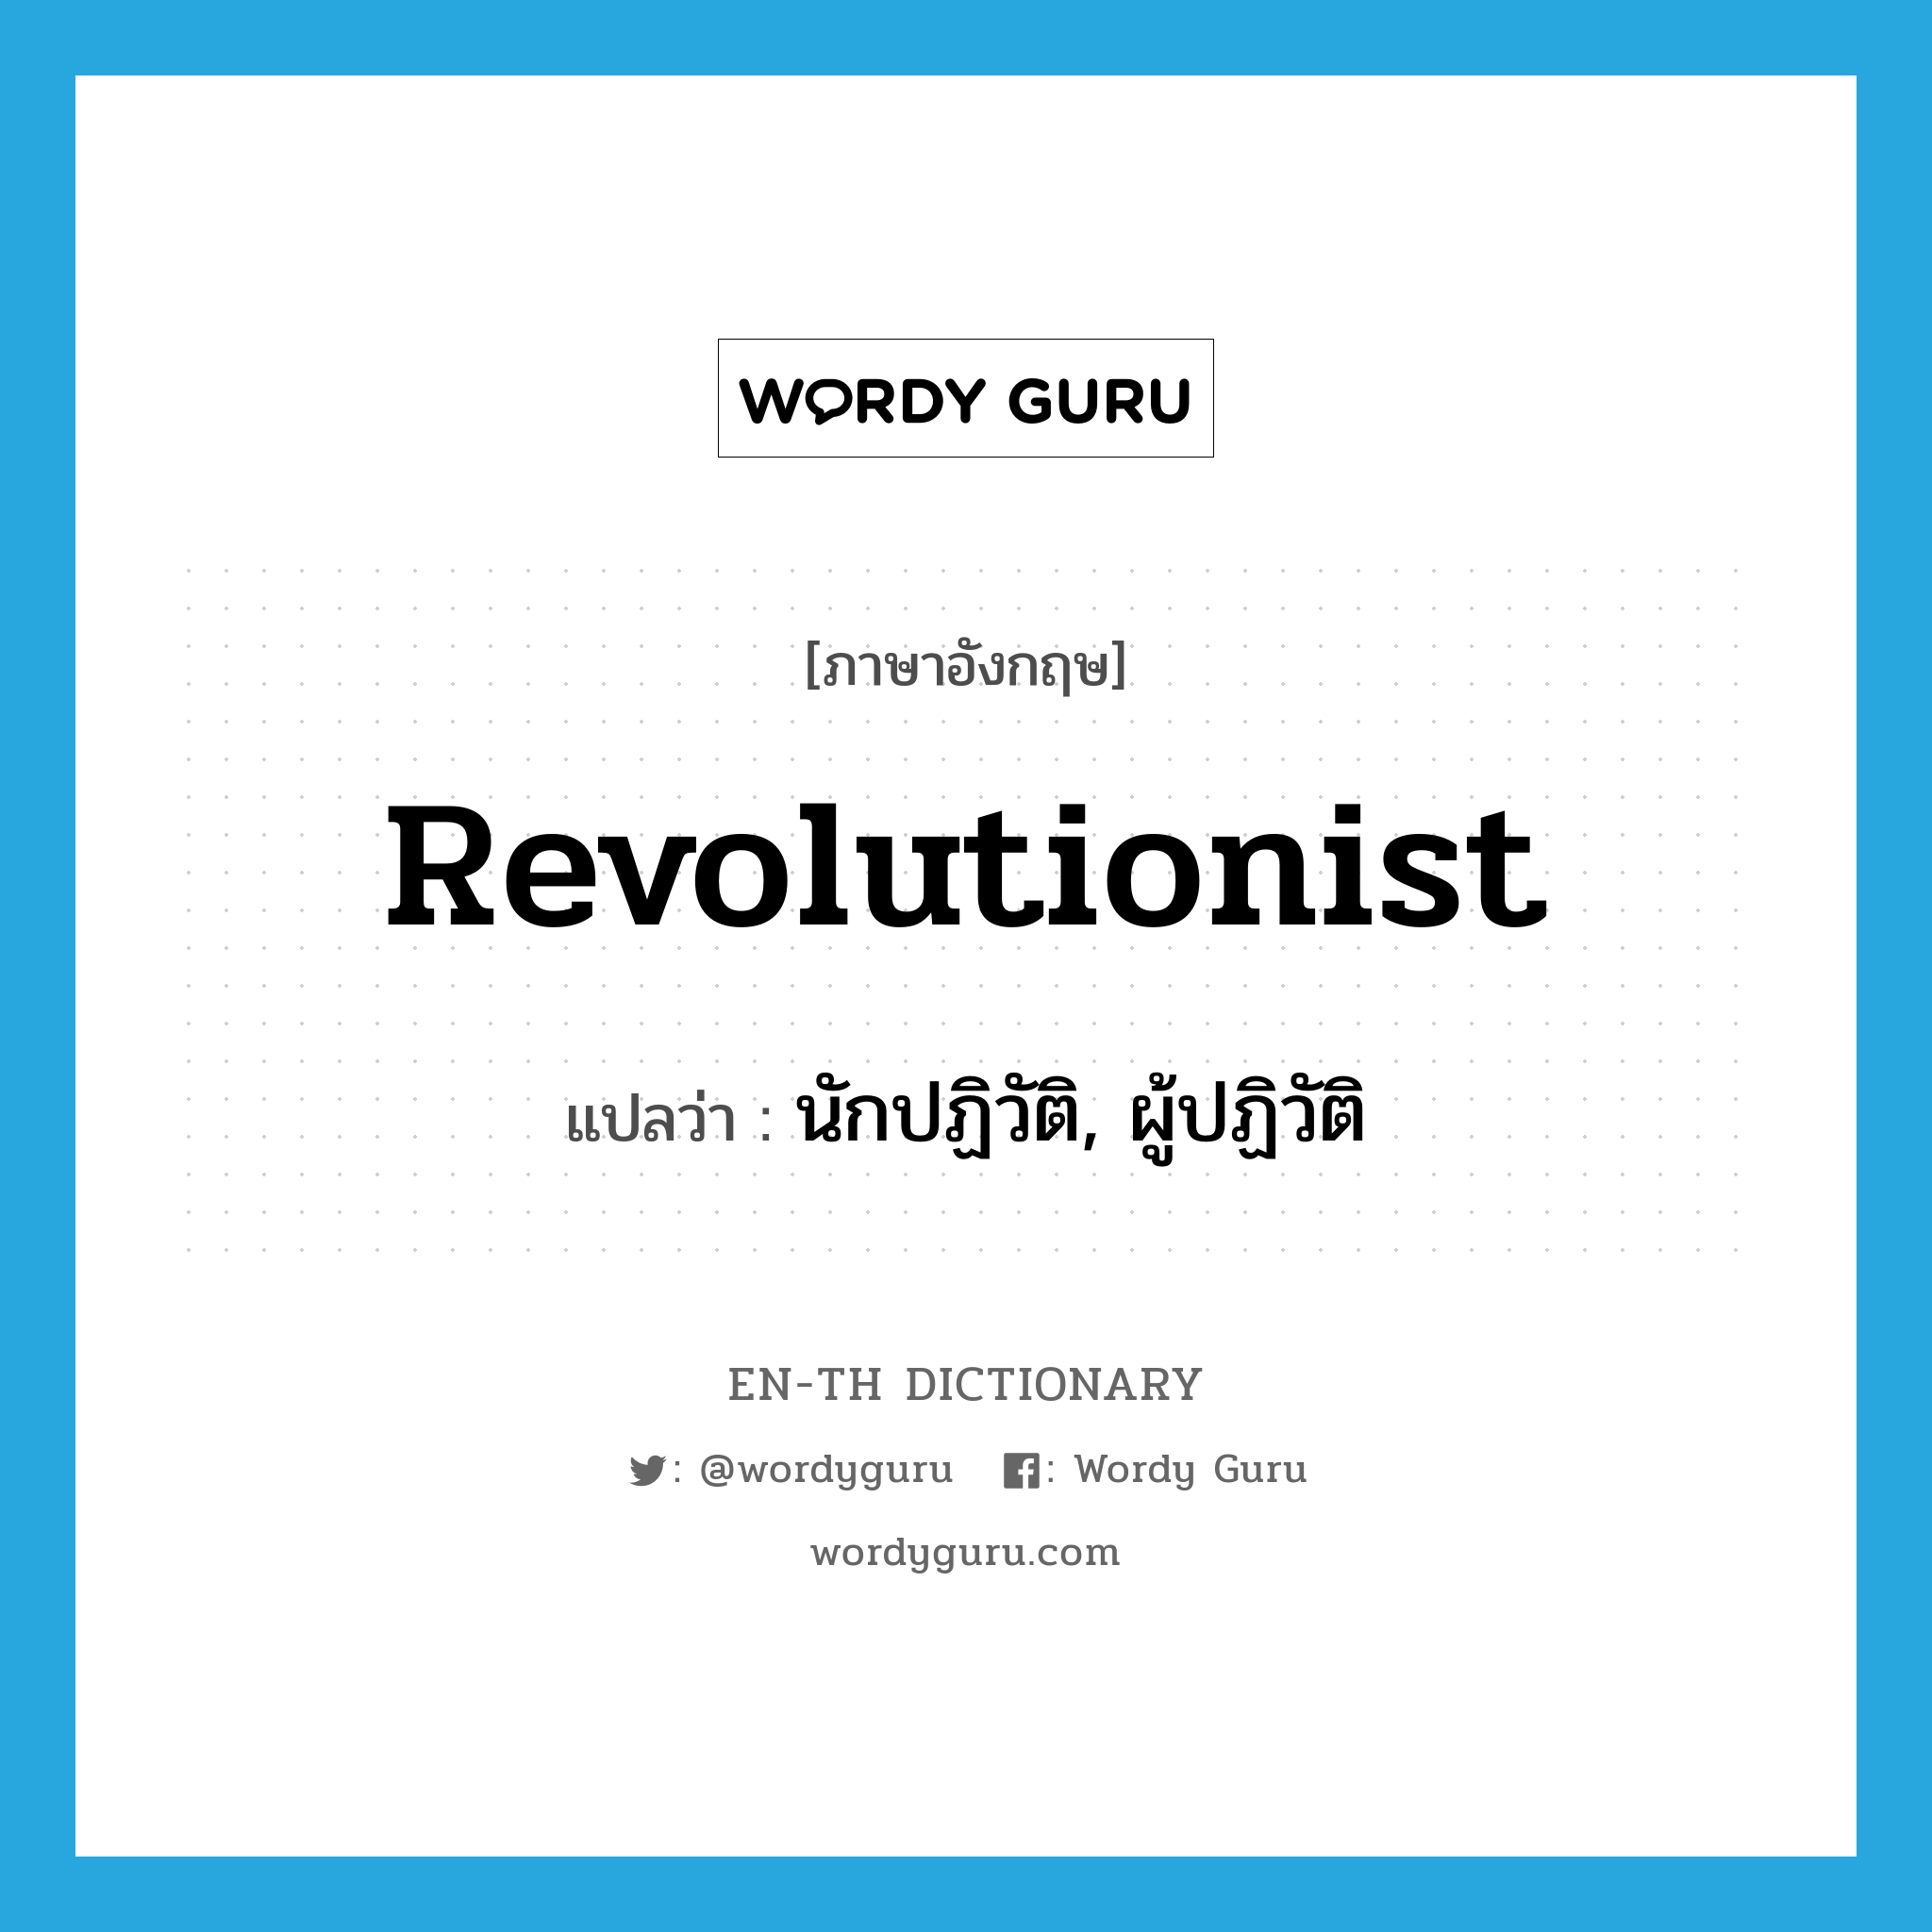 นักปฏิวัติ, ผู้ปฏิวัติ ภาษาอังกฤษ?, คำศัพท์ภาษาอังกฤษ นักปฏิวัติ, ผู้ปฏิวัติ แปลว่า revolutionist ประเภท N หมวด N